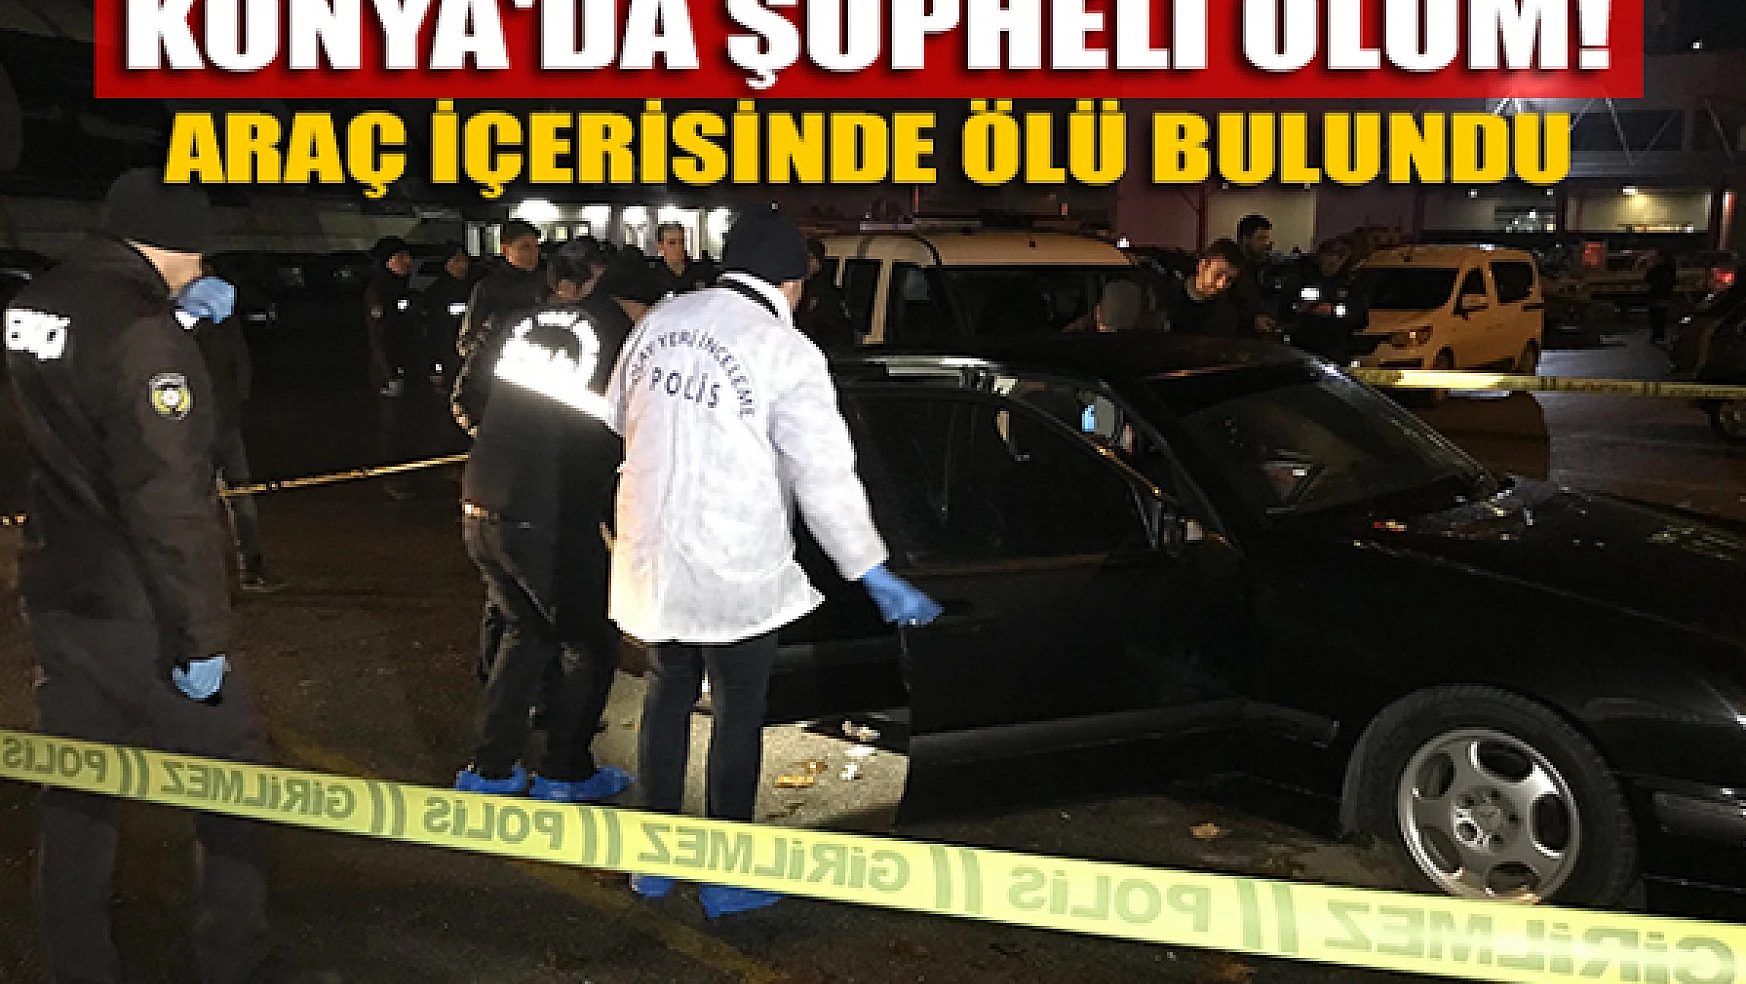 Konya'da şüpheli ölüm! Araç içerisinde ölü bulundu